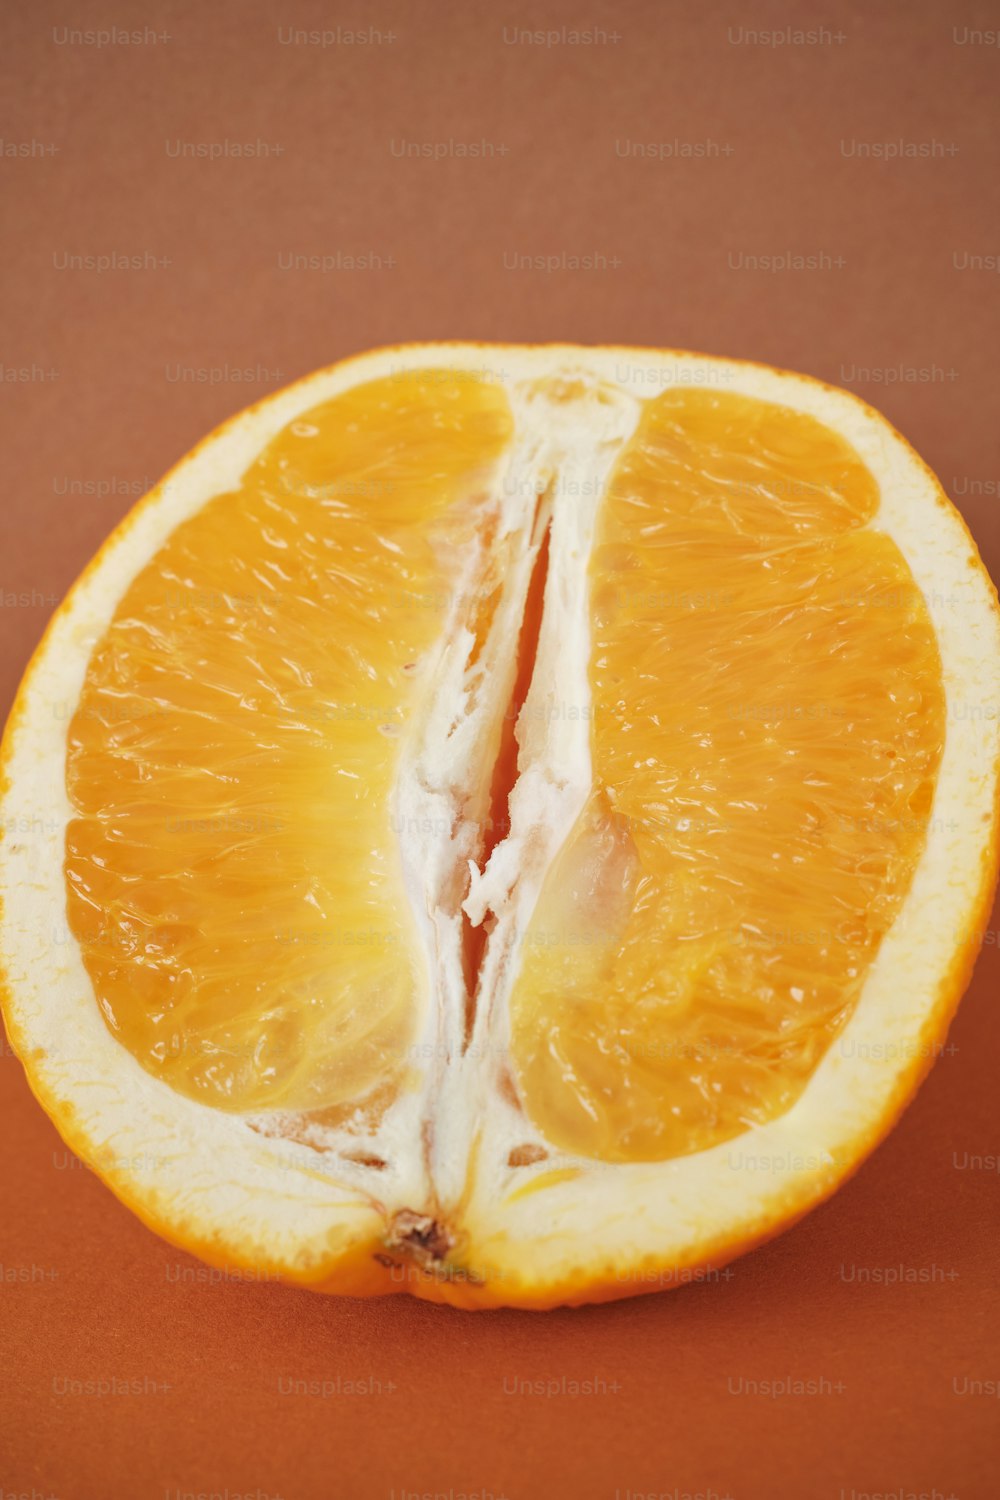 una naranja cortada por la mitad sobre una superficie marrón